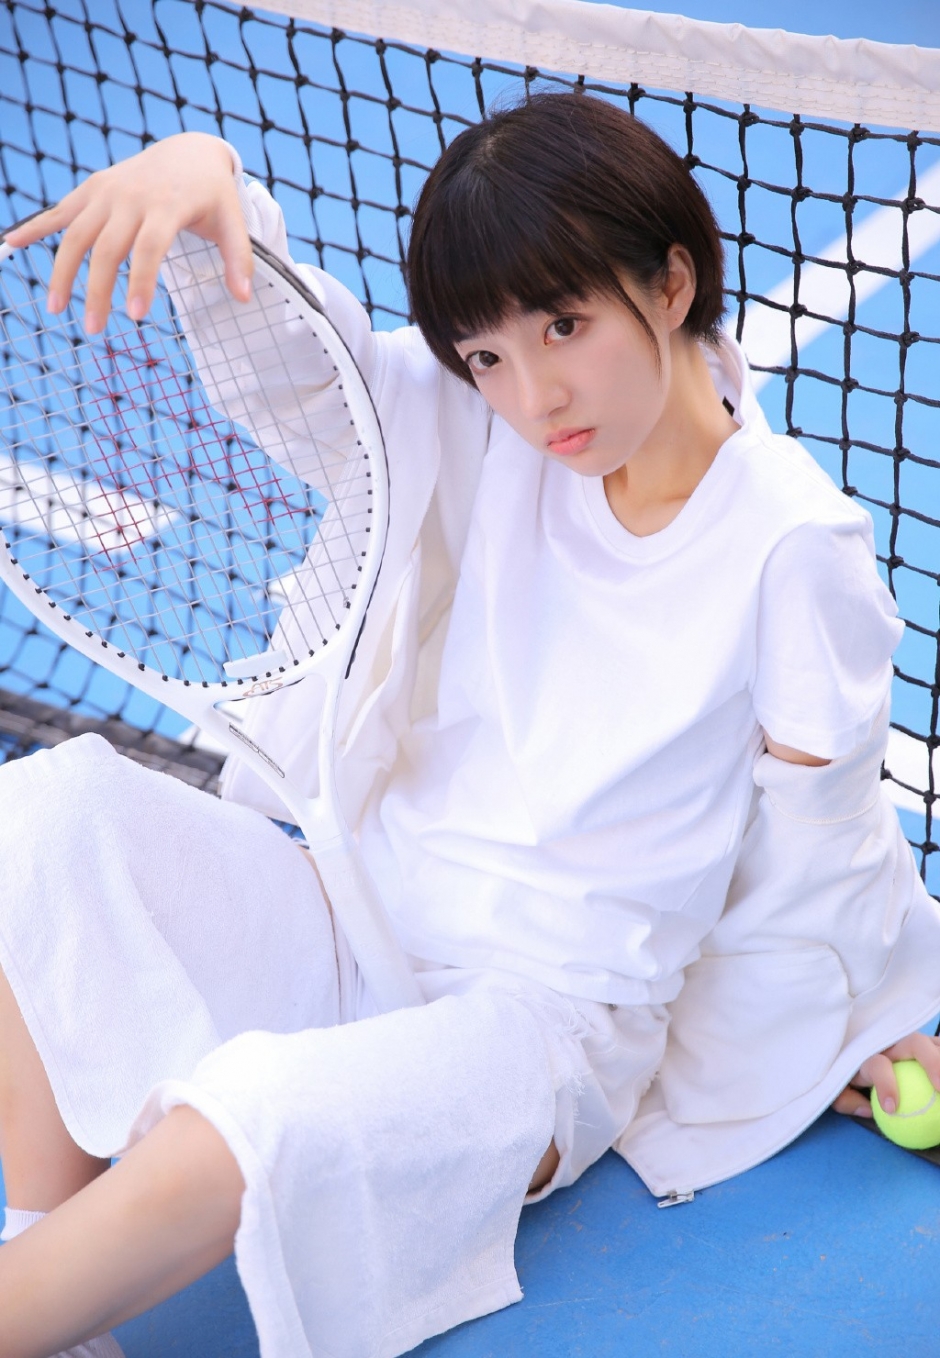 白色运动服美女长相清纯可爱学生头无辜大眼网球场图片